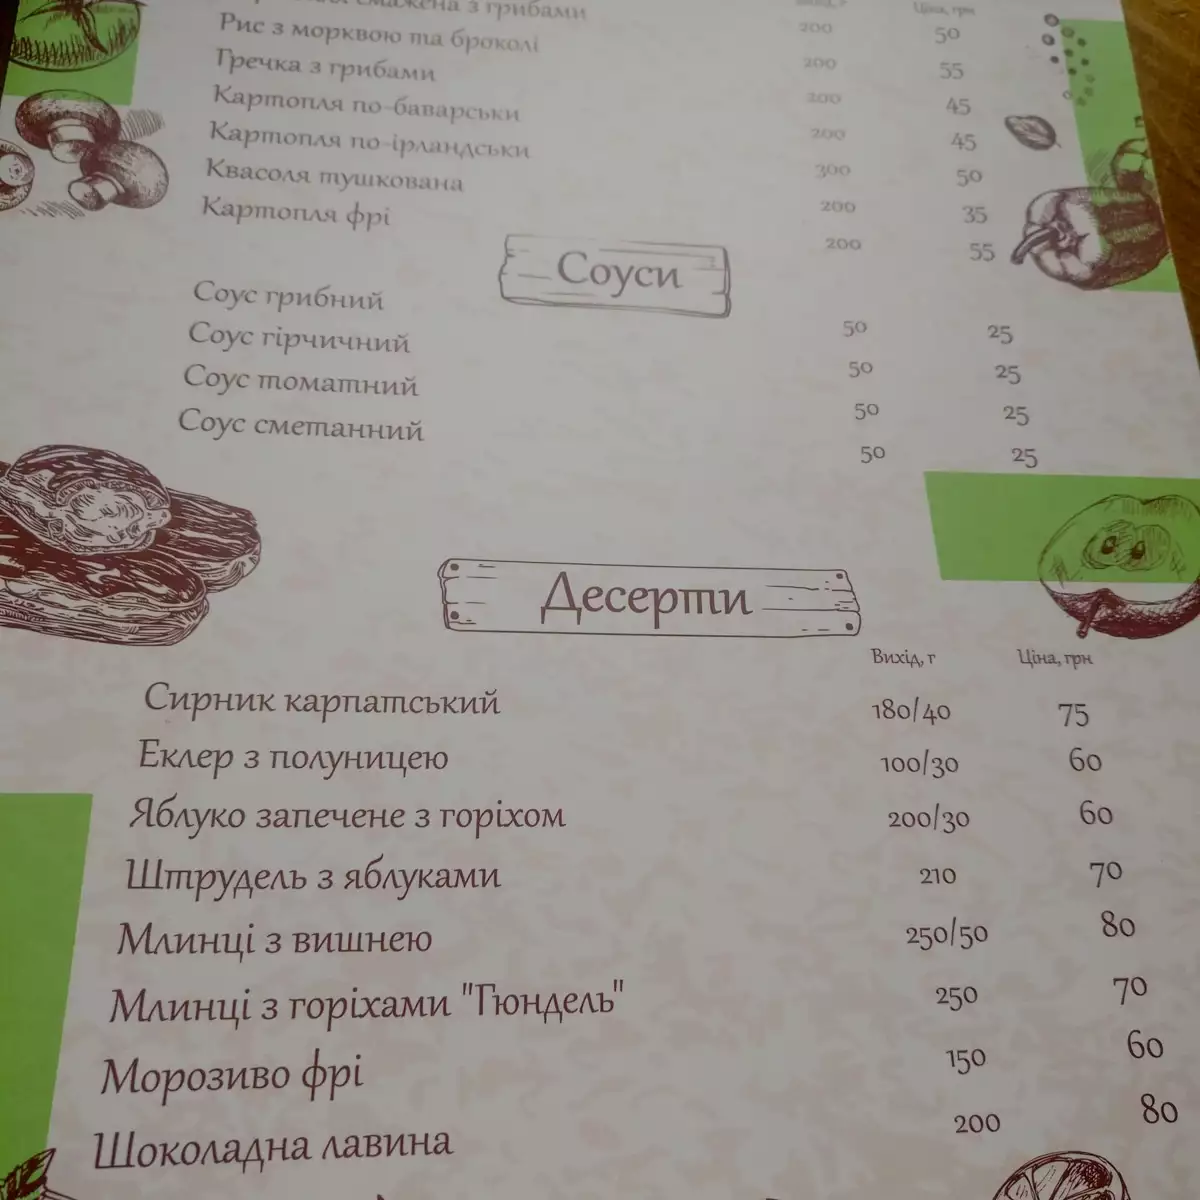 Restaurant “Voyevodyno”